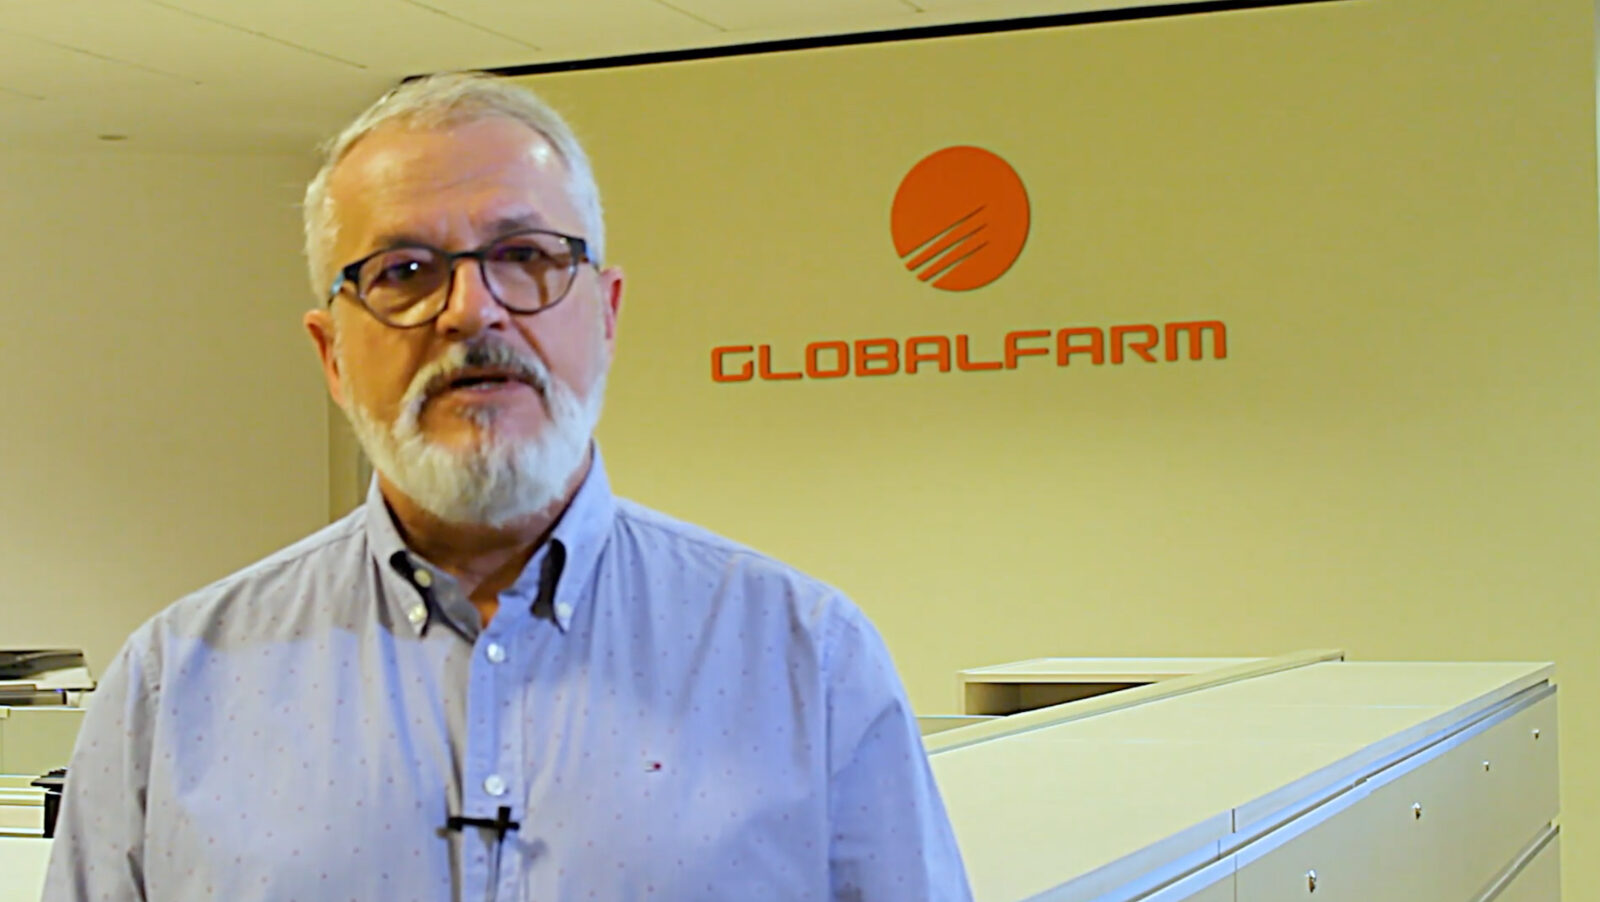 Global Farm S.A. / Continuidad de negocio y generación de valor utilizando tecnología Citrix